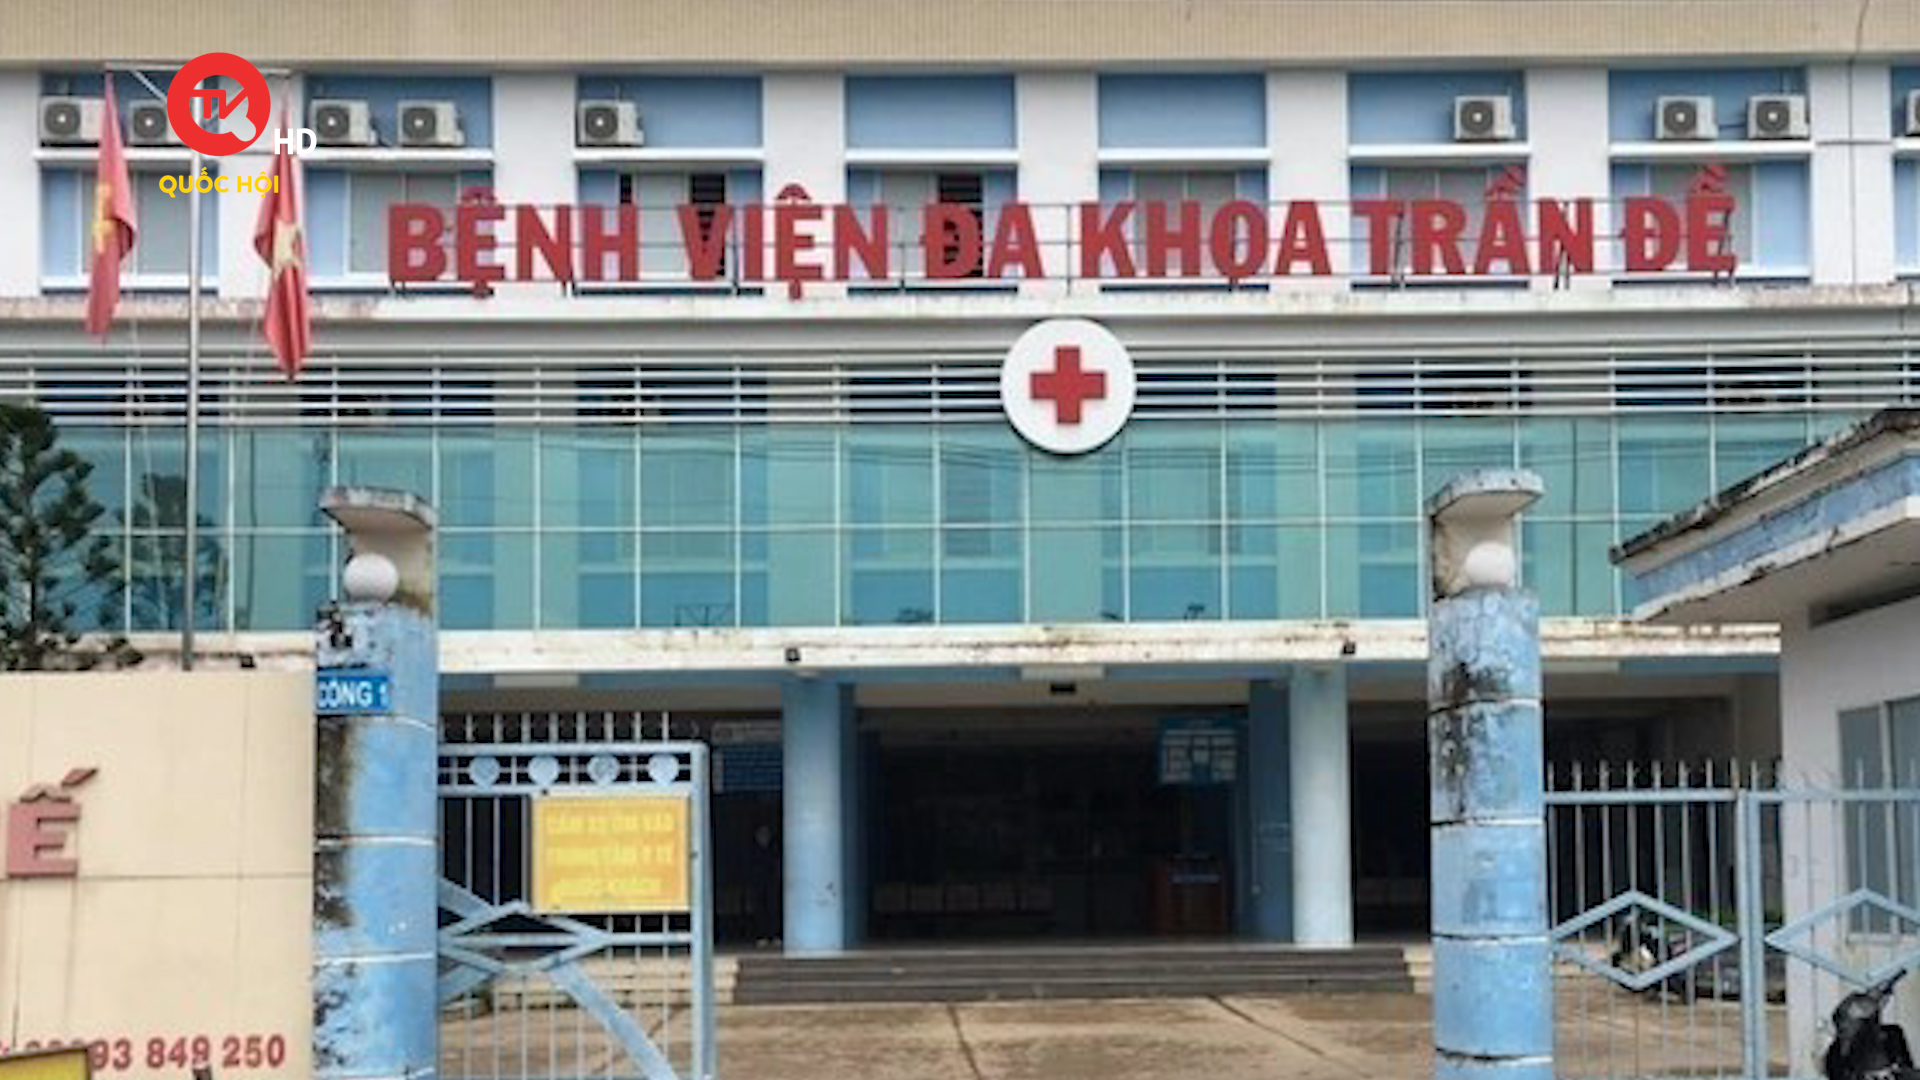 Lãnh đạo trung tâm y tế huyện đề nghị thanh tra chính đơn vị mình